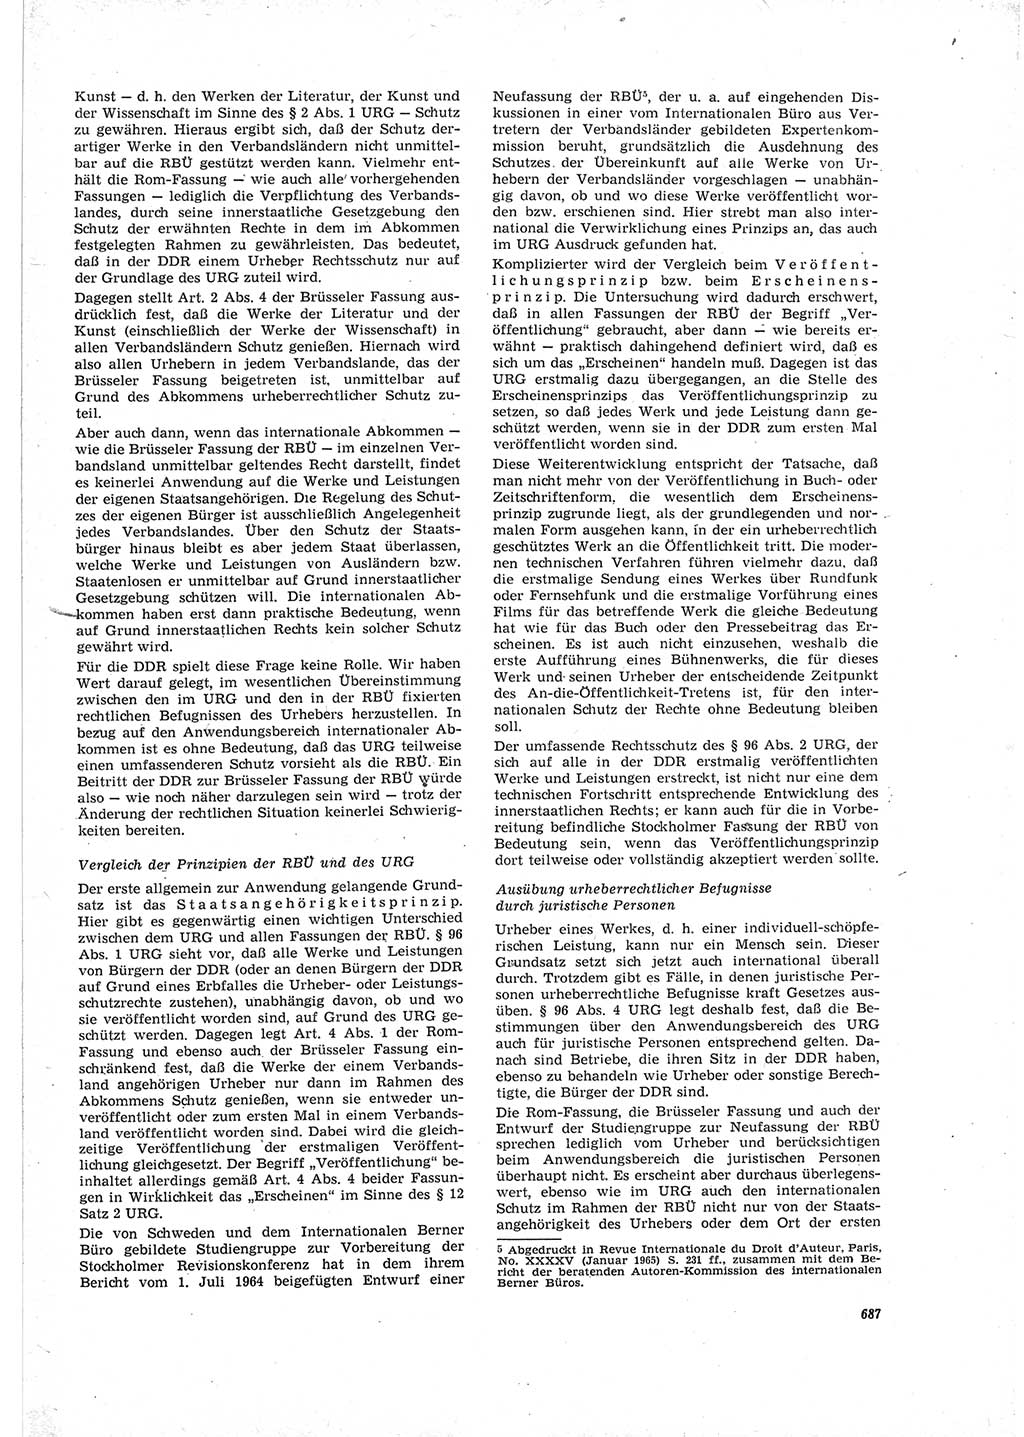 Neue Justiz (NJ), Zeitschrift für Recht und Rechtswissenschaft [Deutsche Demokratische Republik (DDR)], 19. Jahrgang 1965, Seite 687 (NJ DDR 1965, S. 687)